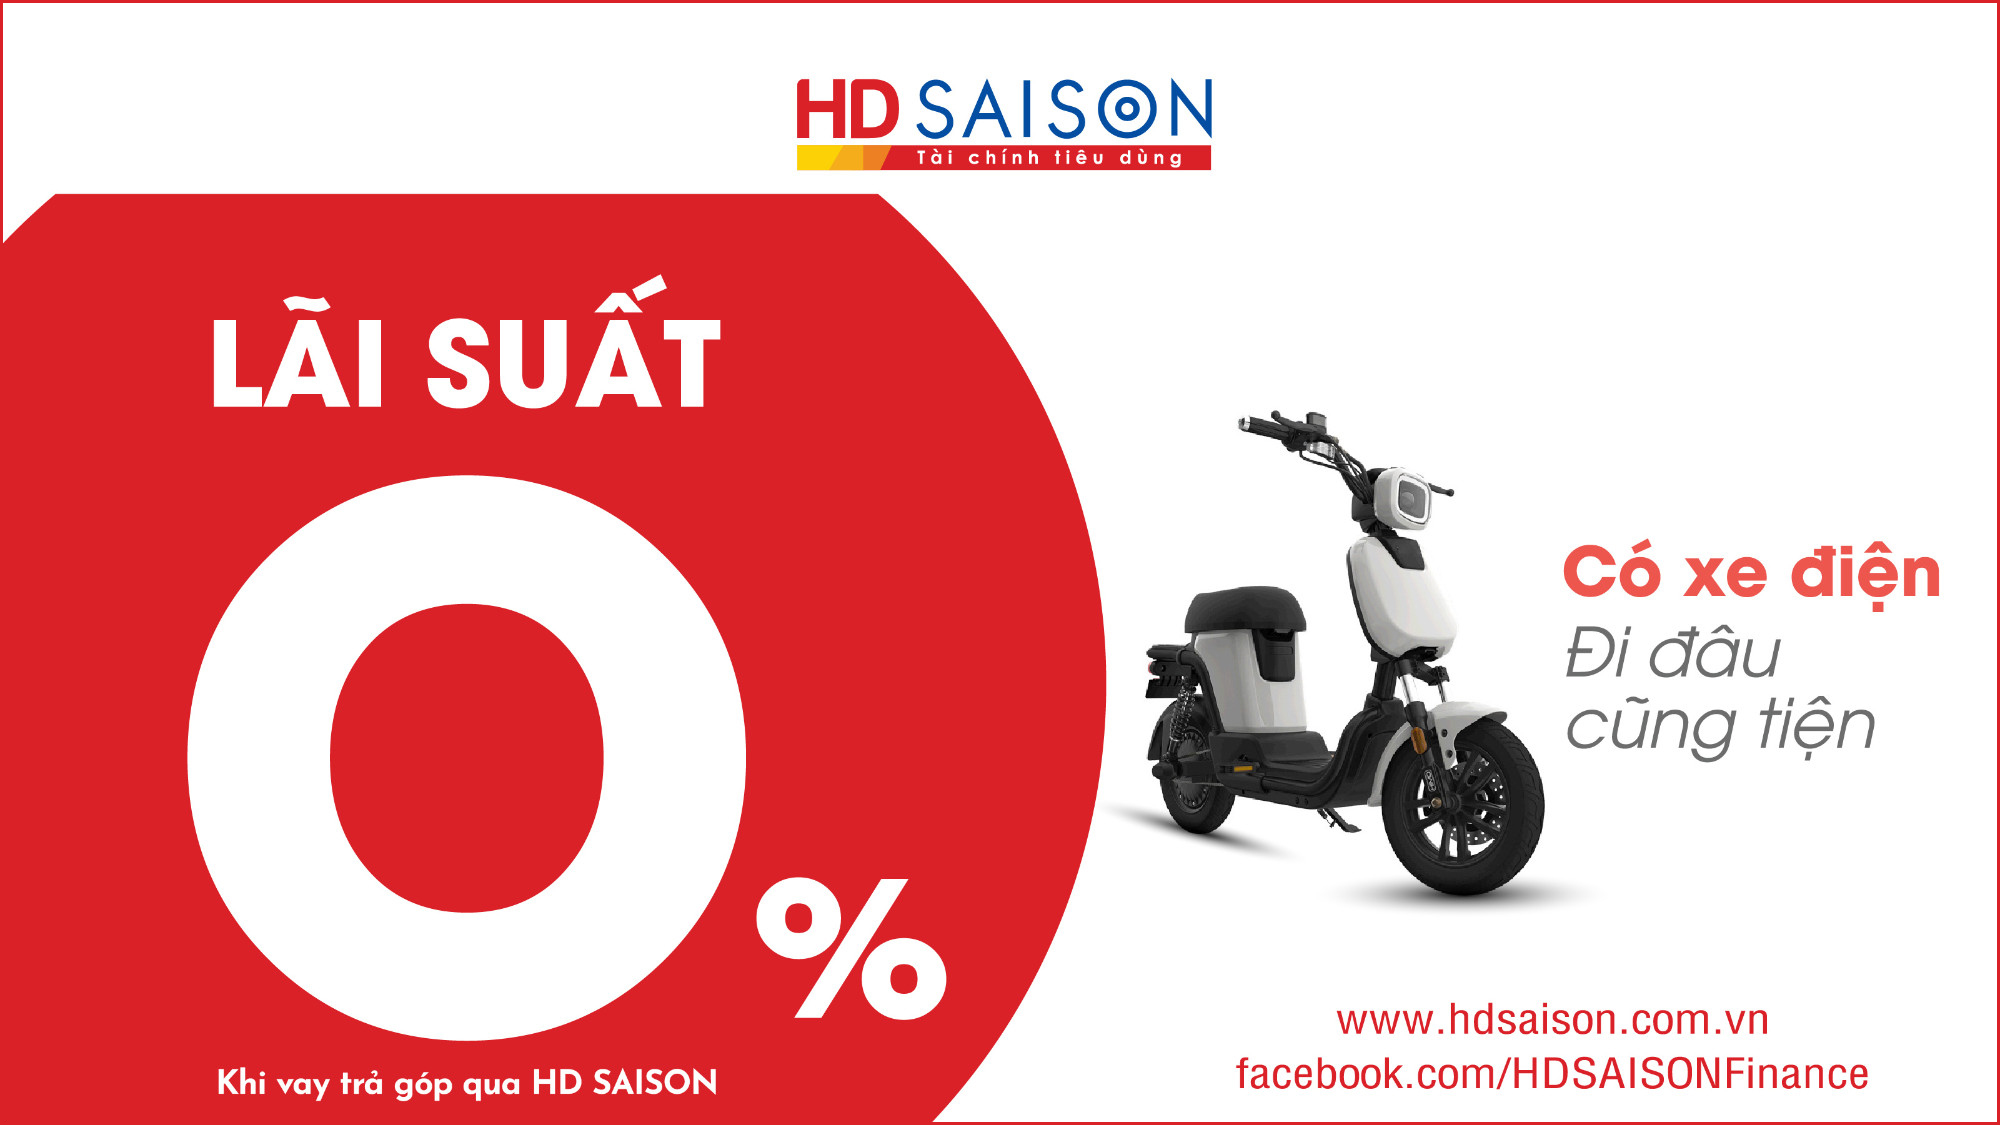 Nắm bắt nhu cầu của người tiêu dùng, HD SAISON đưa ra gói vay ưu đãi 0% lãi suất